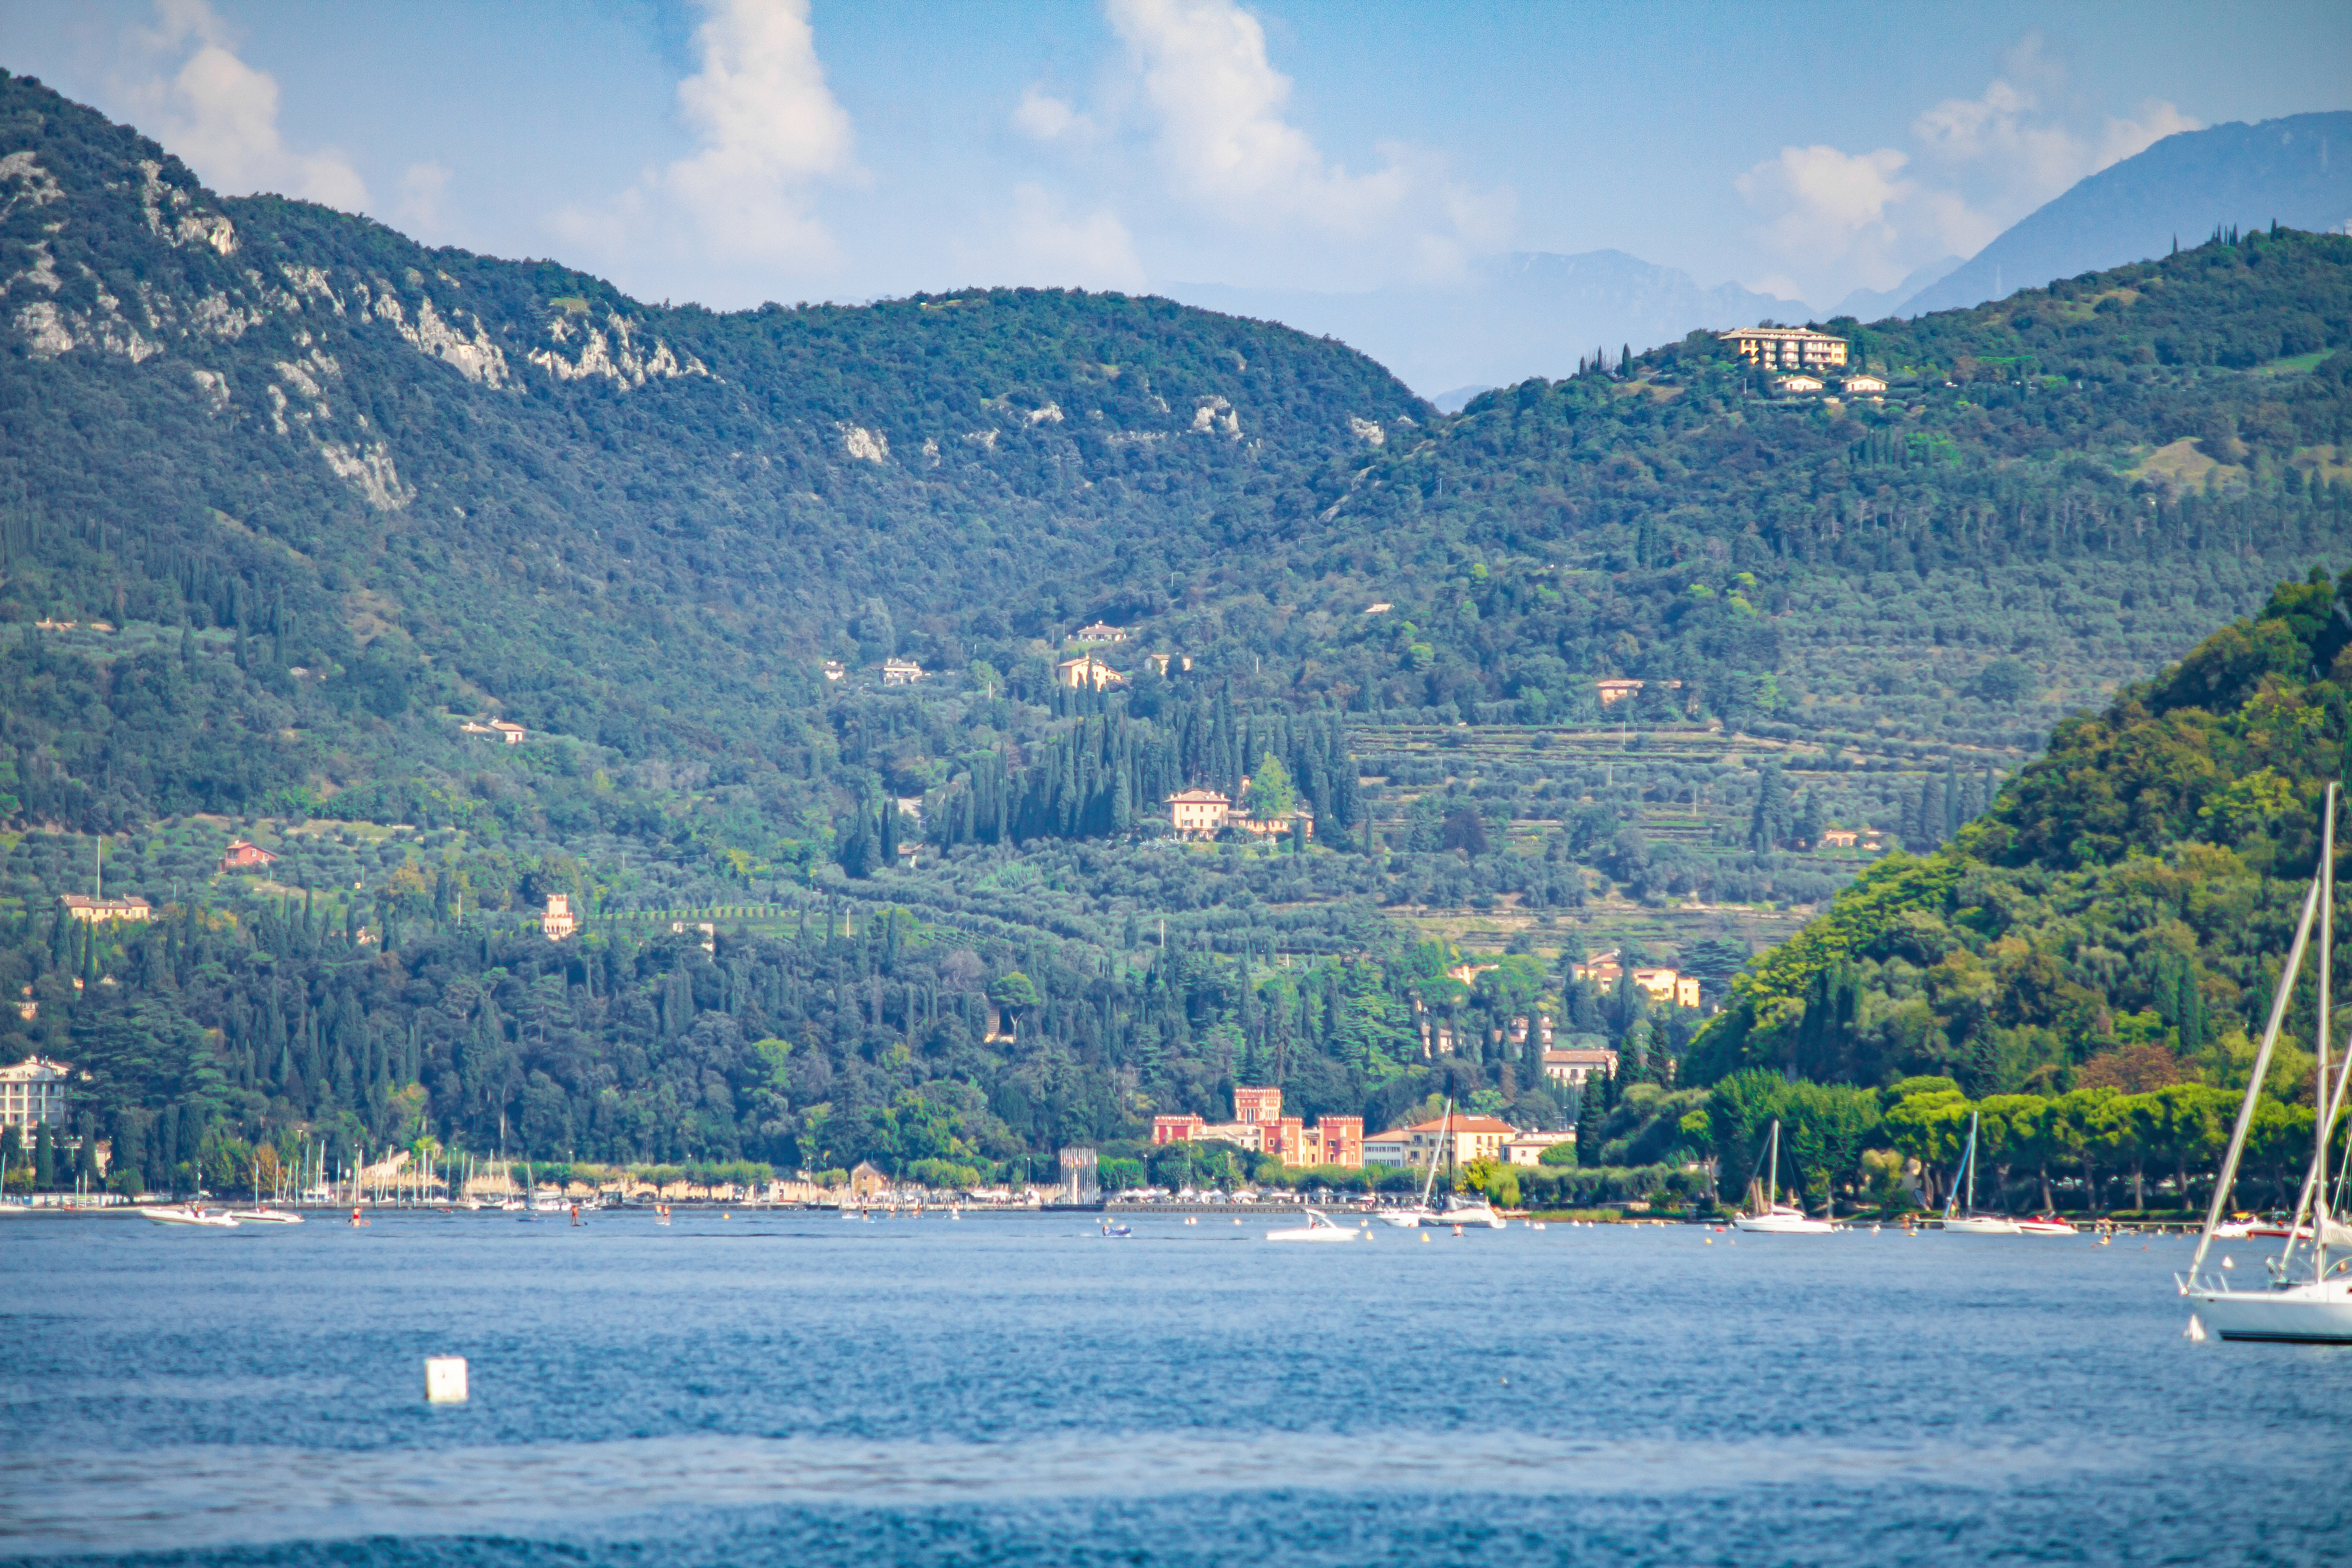 Nivelul de apă foarte scăzut al lacului Garda, Italia, șochează turiștii. „Apa nu mai era acolo” | GALERIE FOTO - Imaginea 4